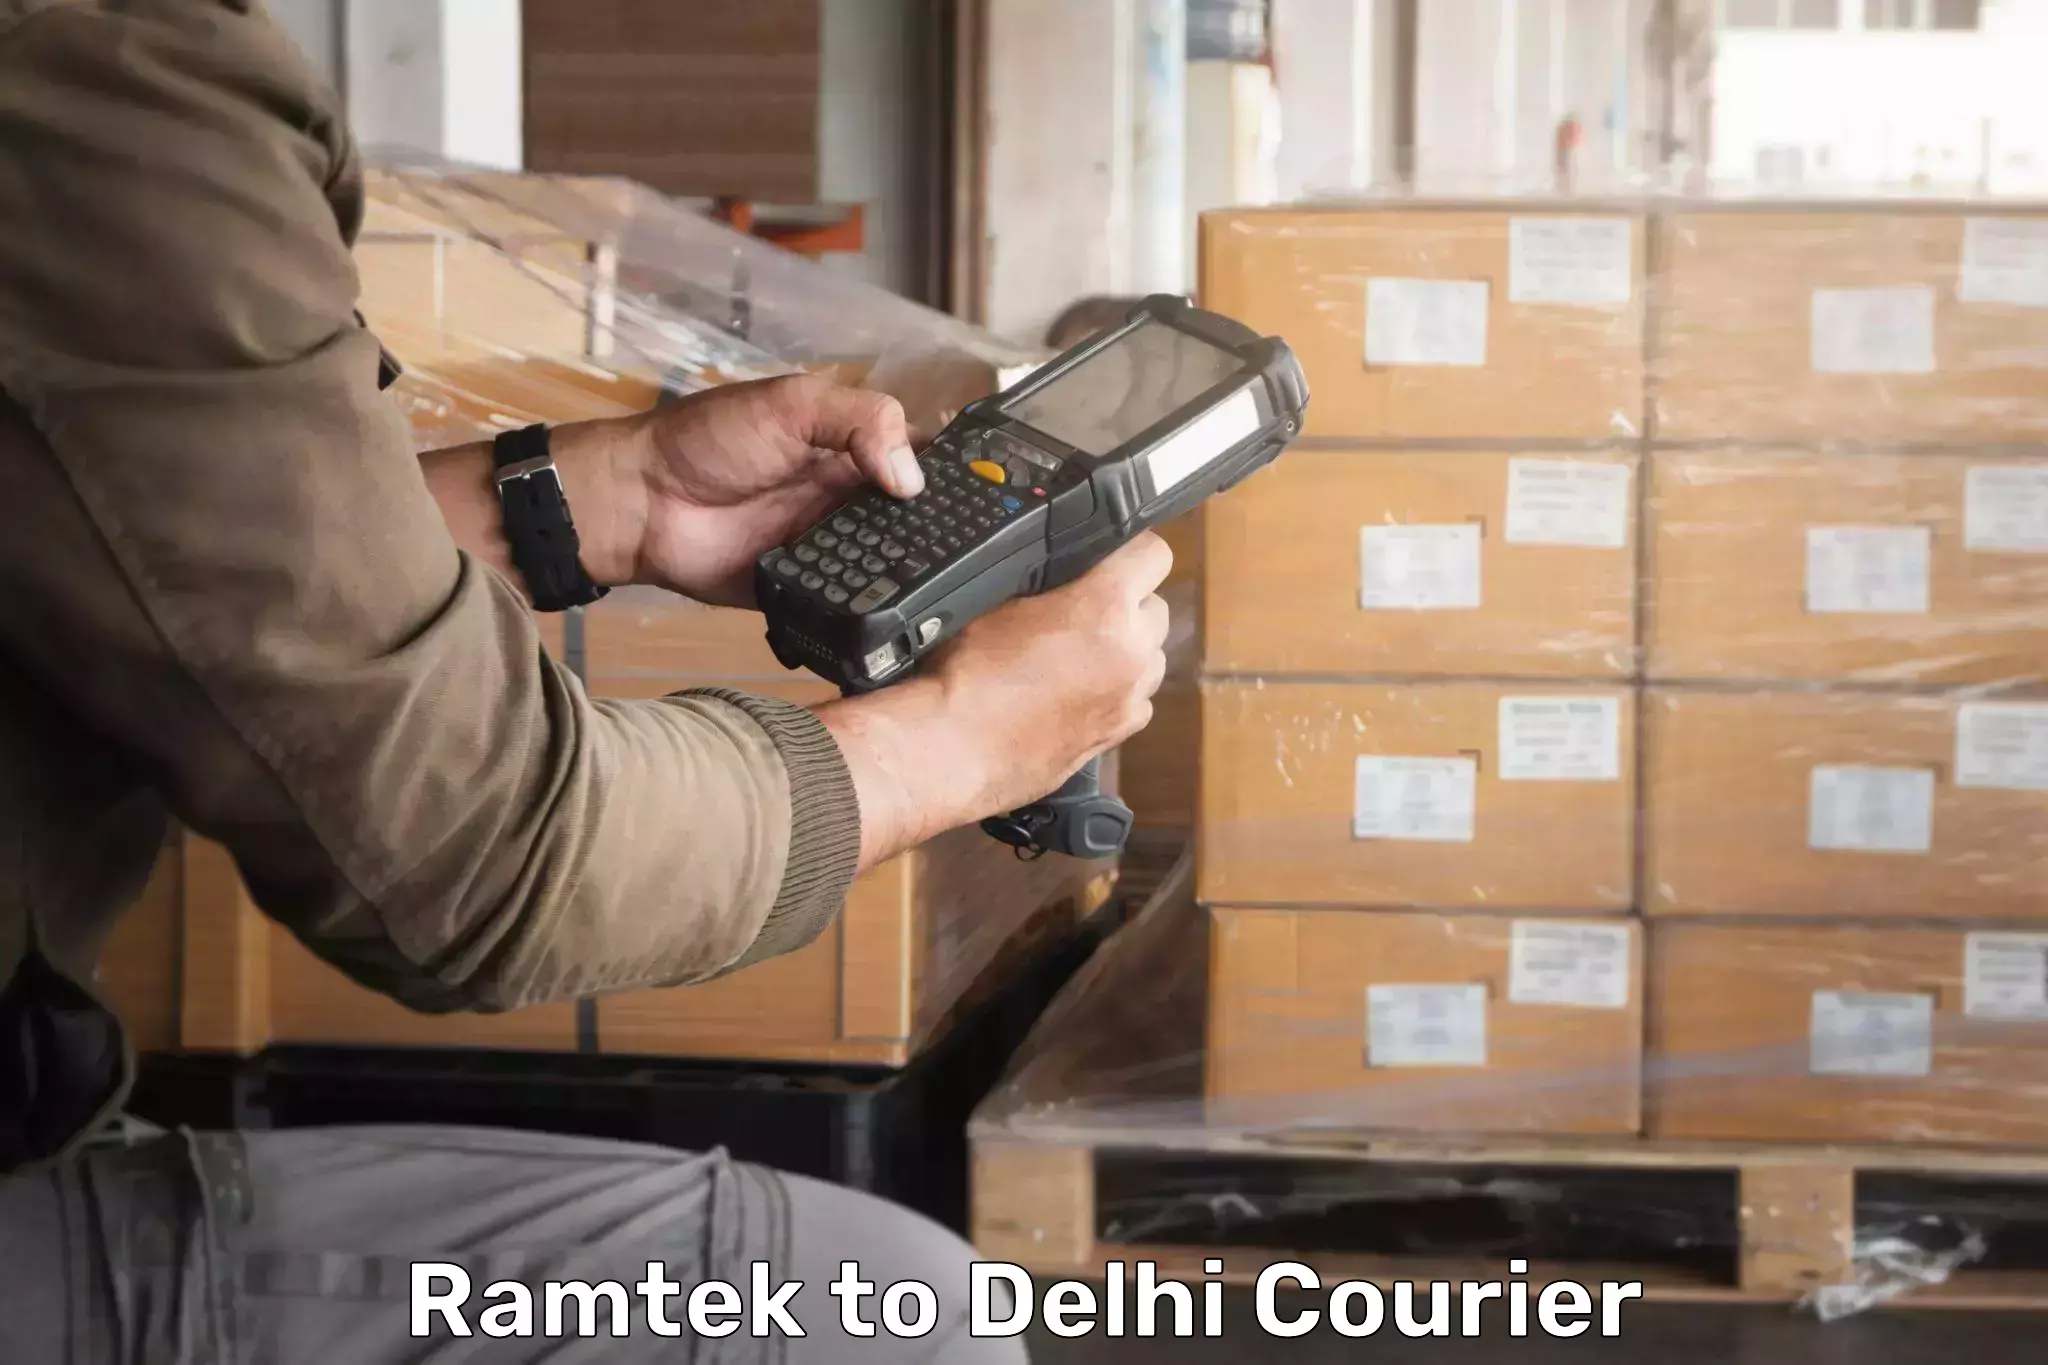 Flexible delivery schedules in Ramtek to University of Delhi